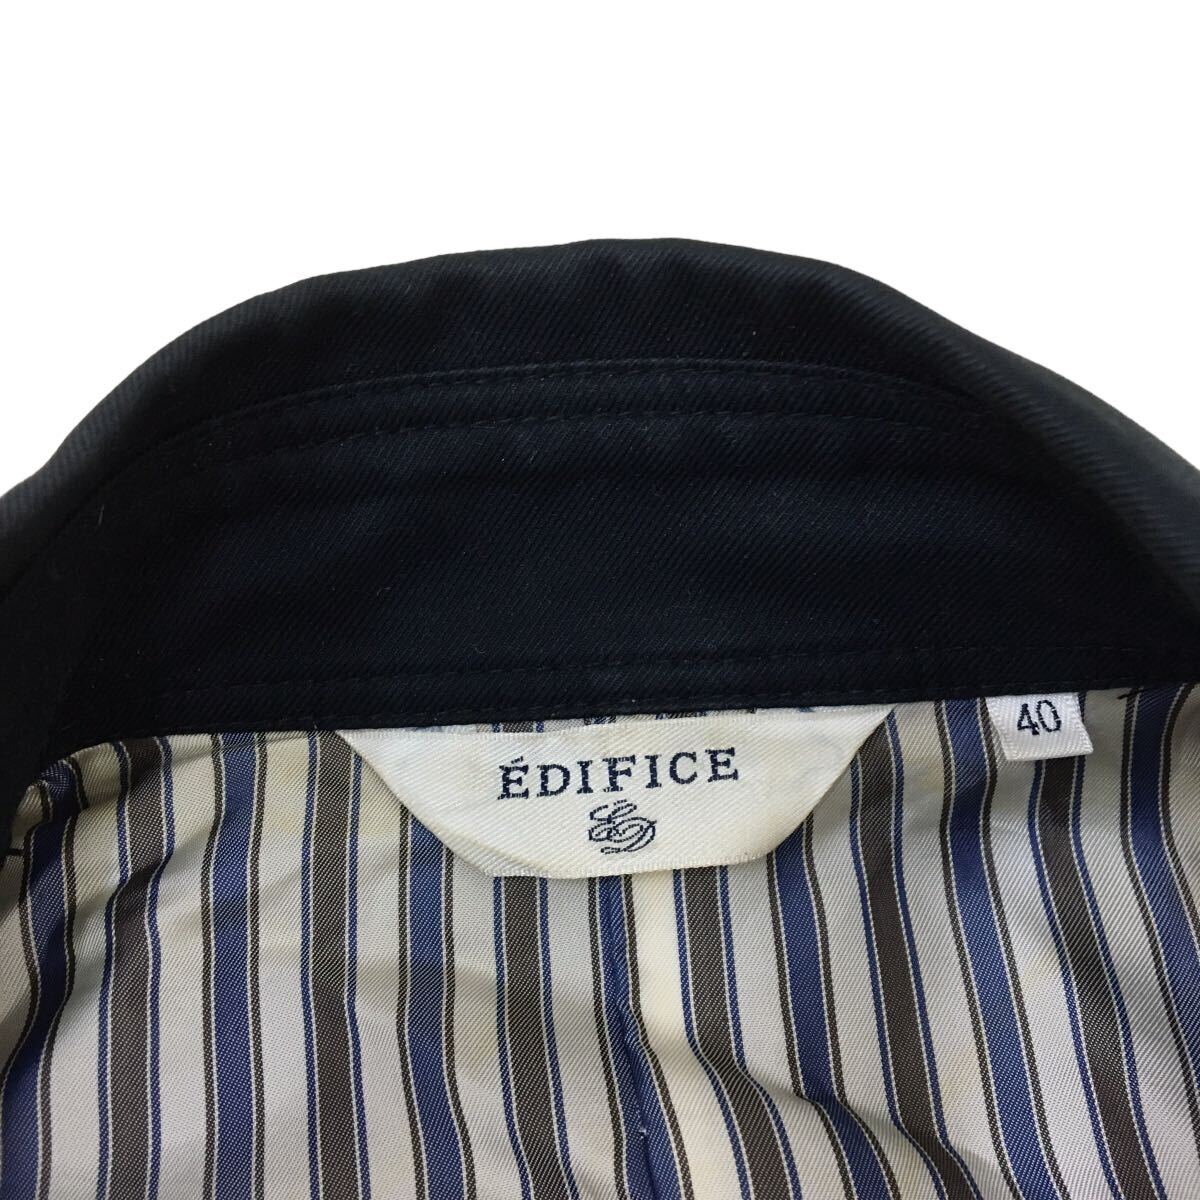 C344 EDIFICE エディフィス チンストラップ ジャケット 上着 羽織り トップス メンズ 40 ネイビー _画像8